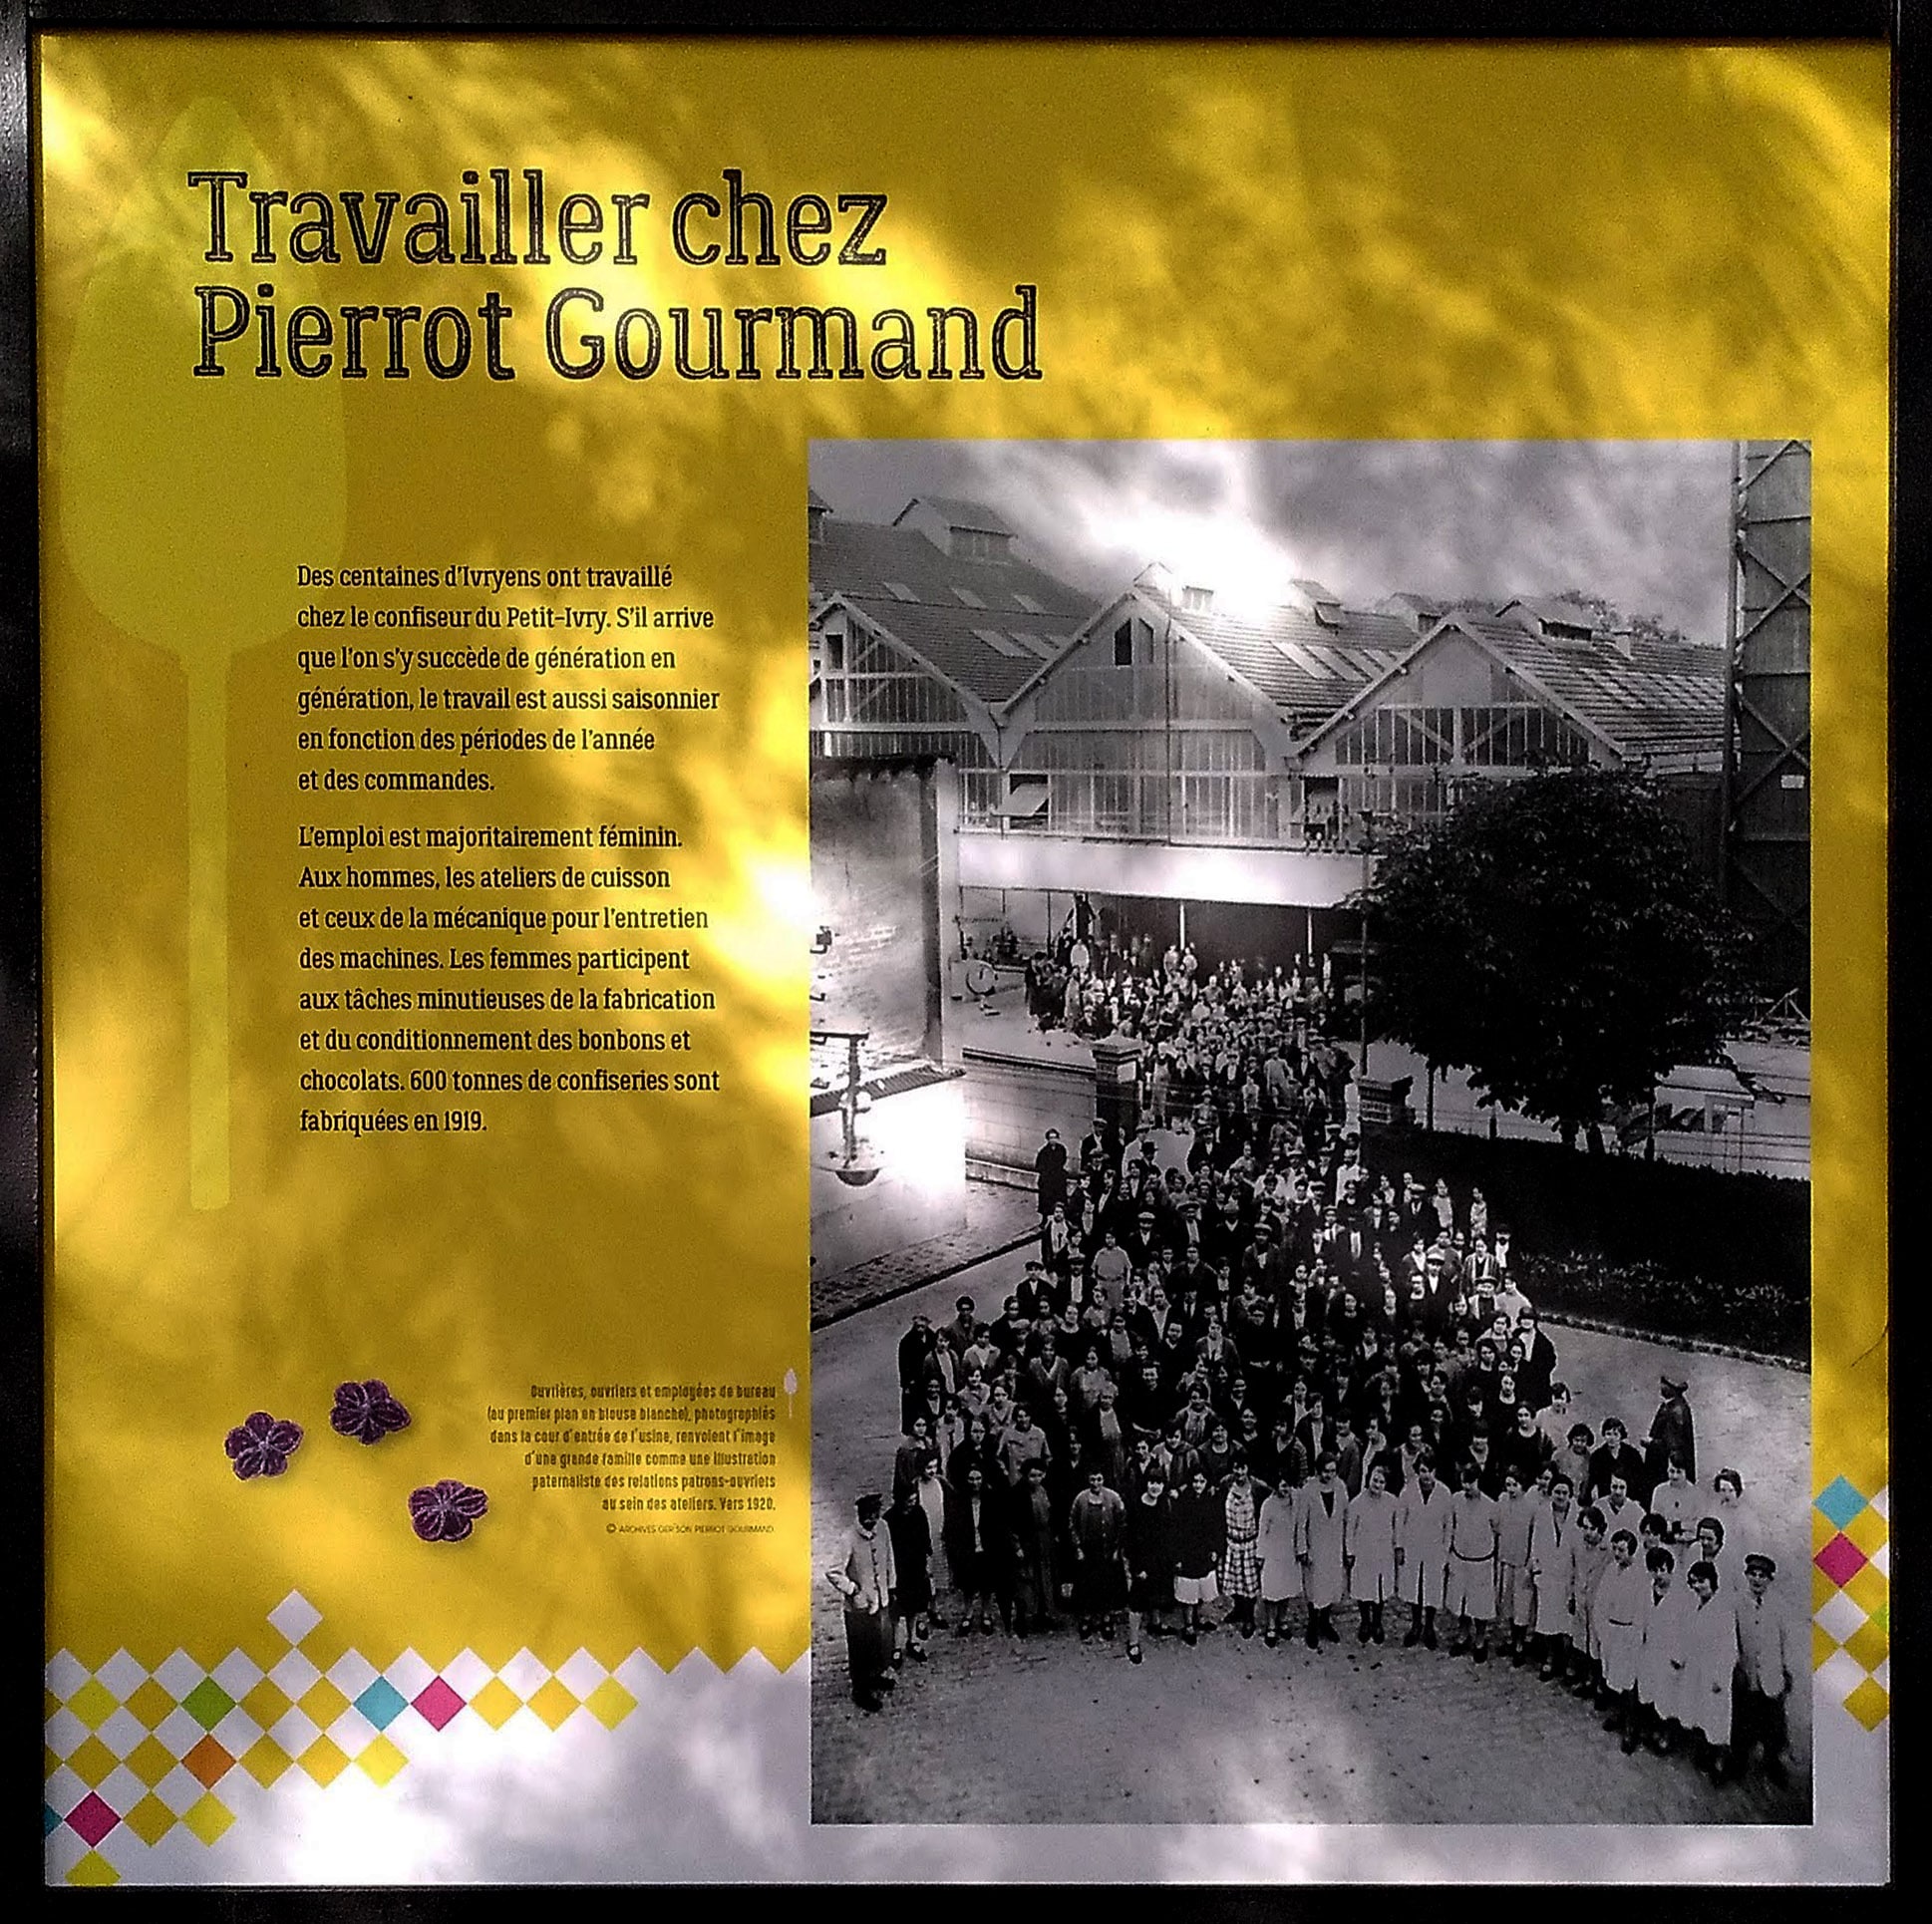 expo Pierrot Gourmand Ivry sur Seine 2021